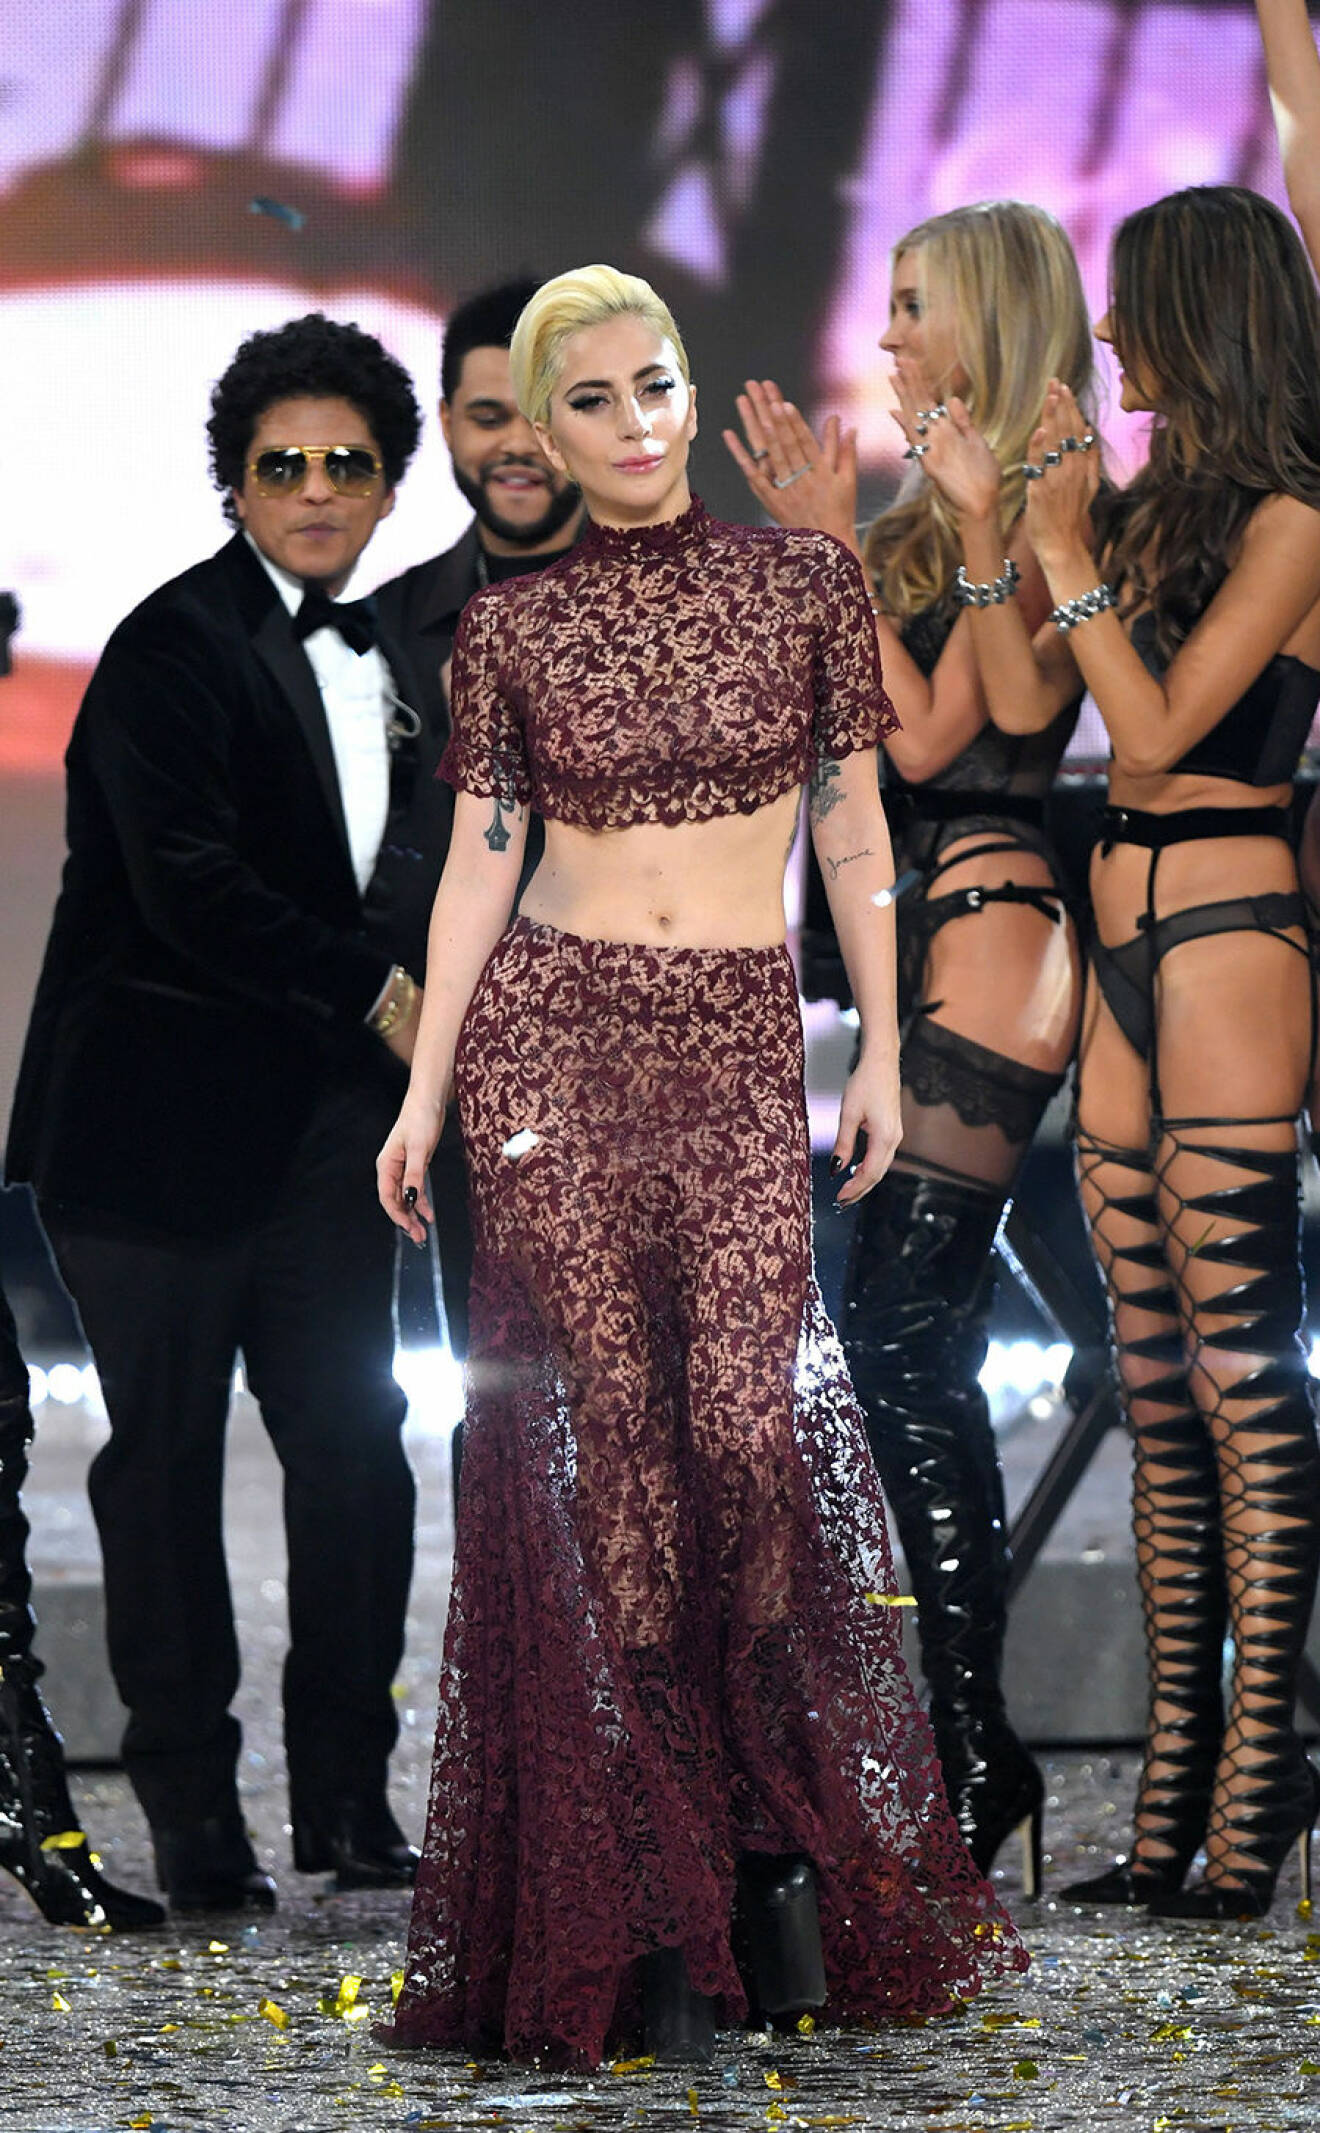 Lady Gaga on the catwalk